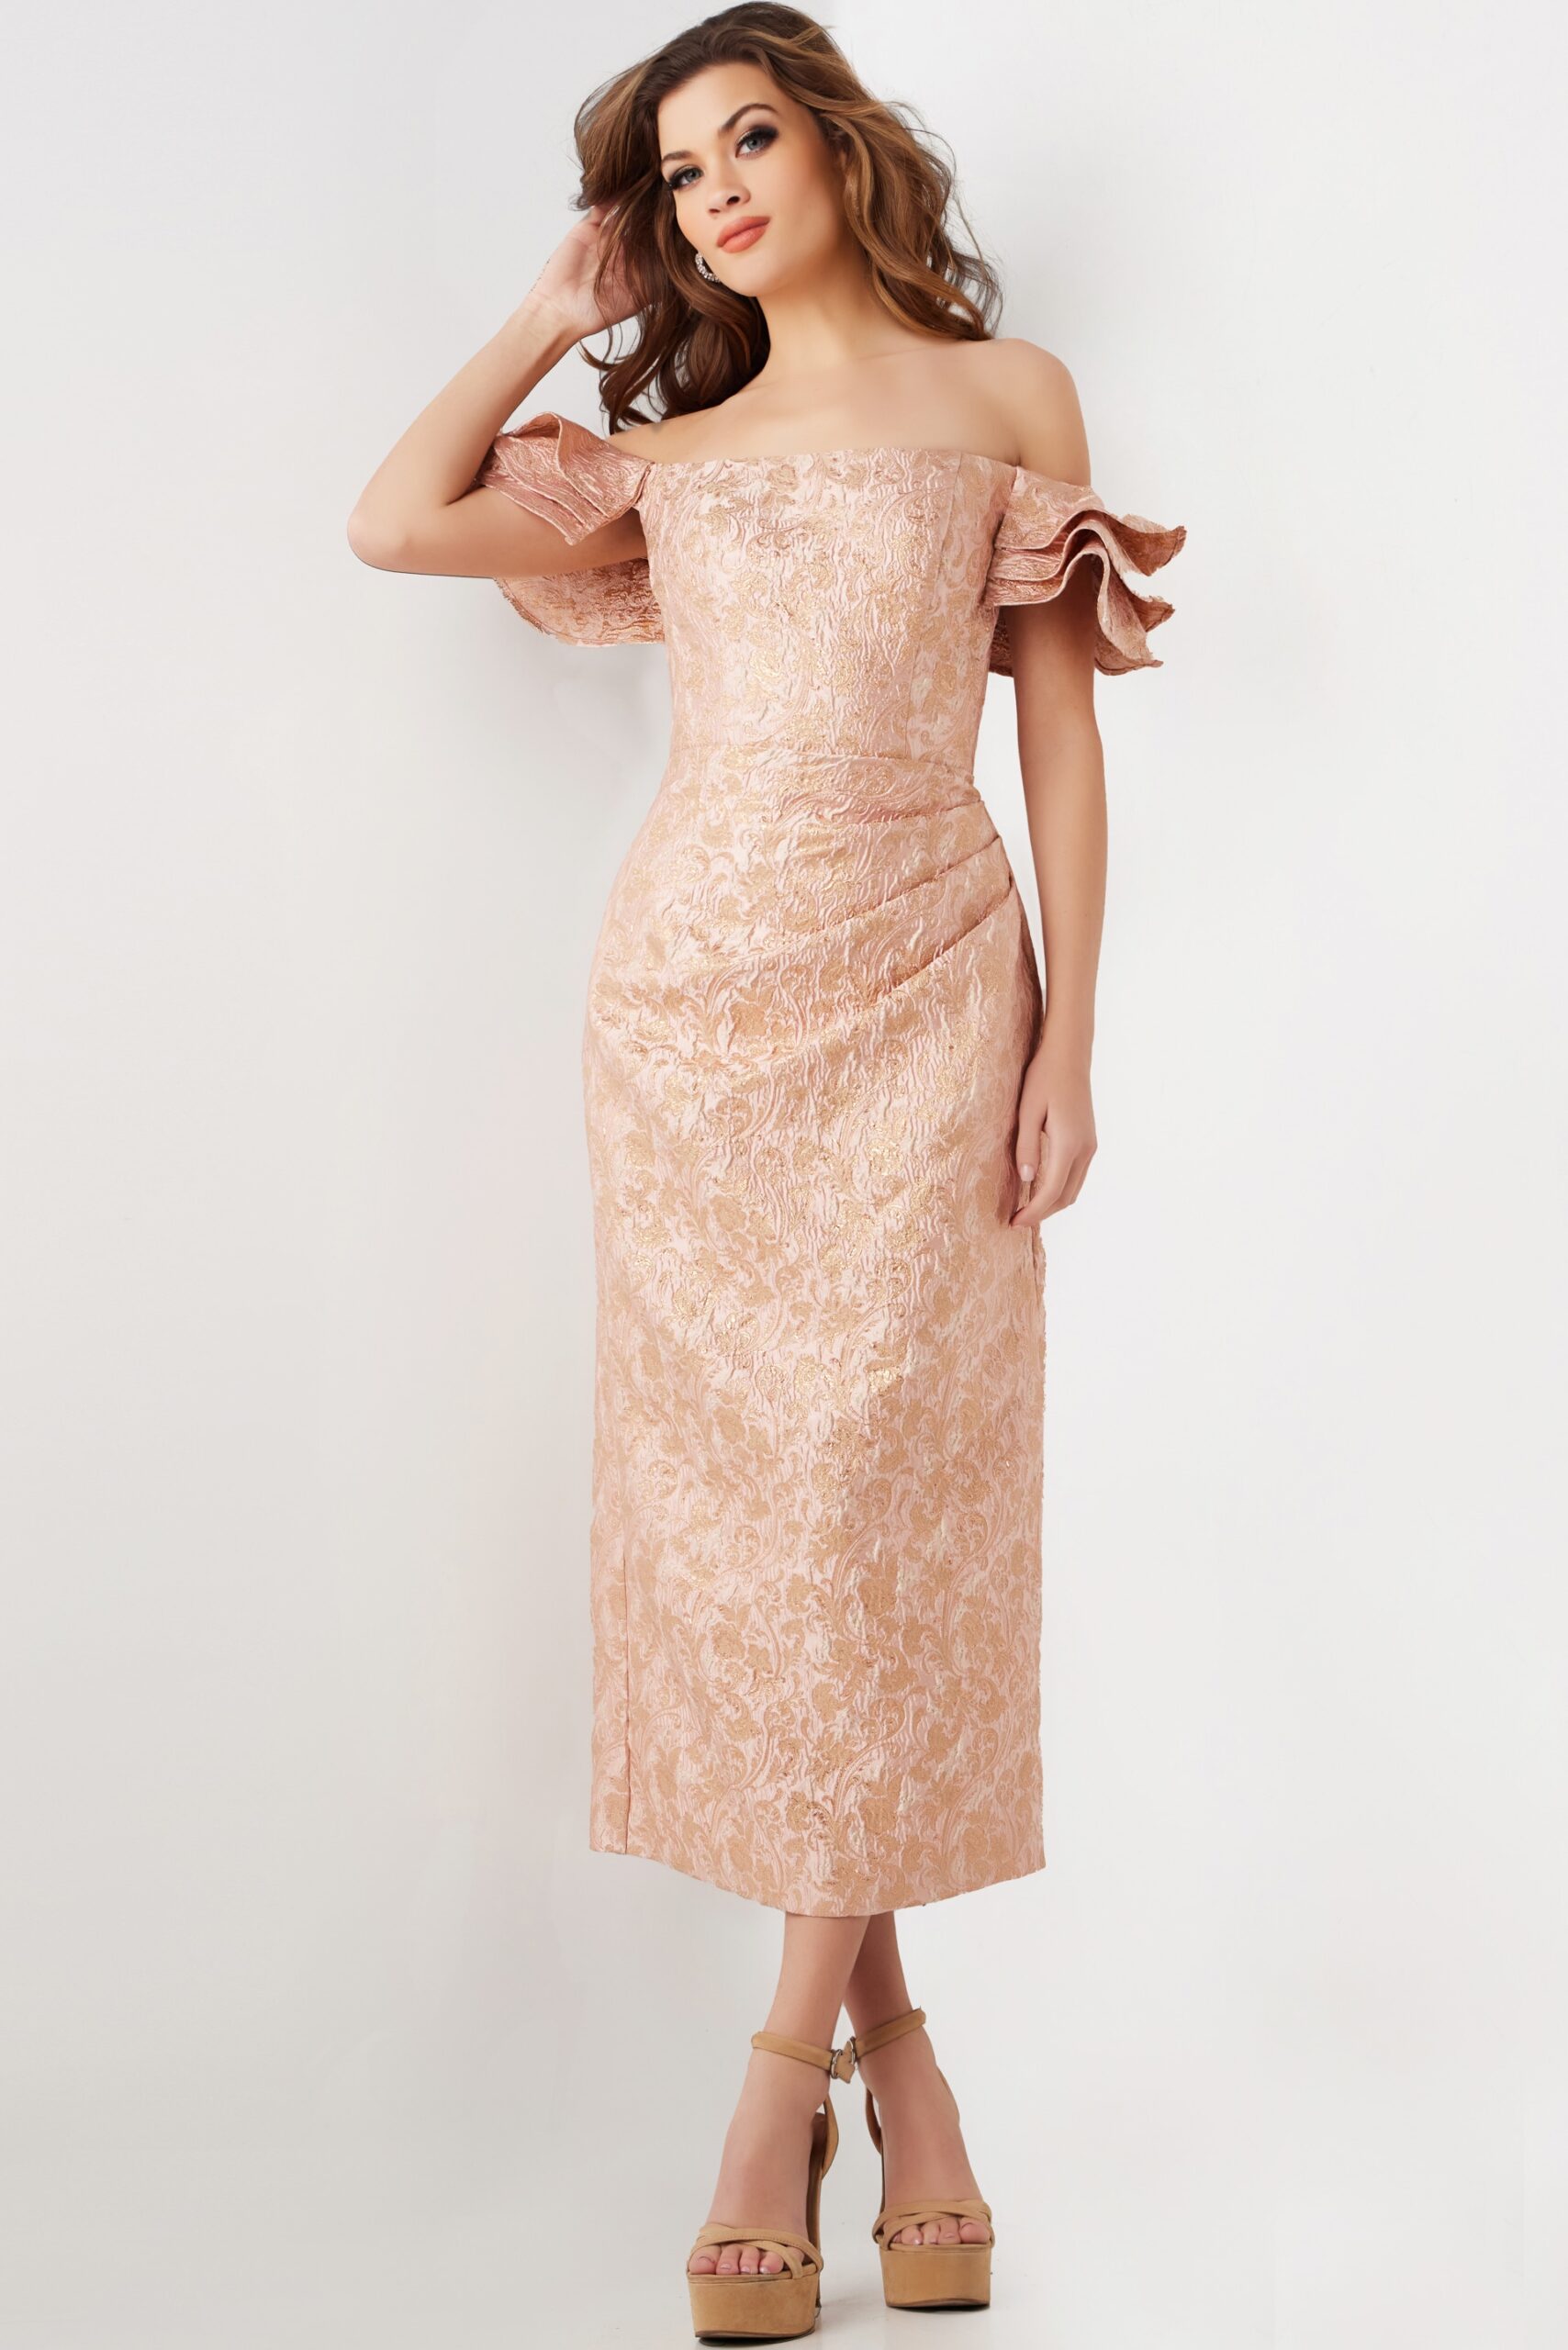 Rose Gold Off the Shoulder Tea Length Dress 25667